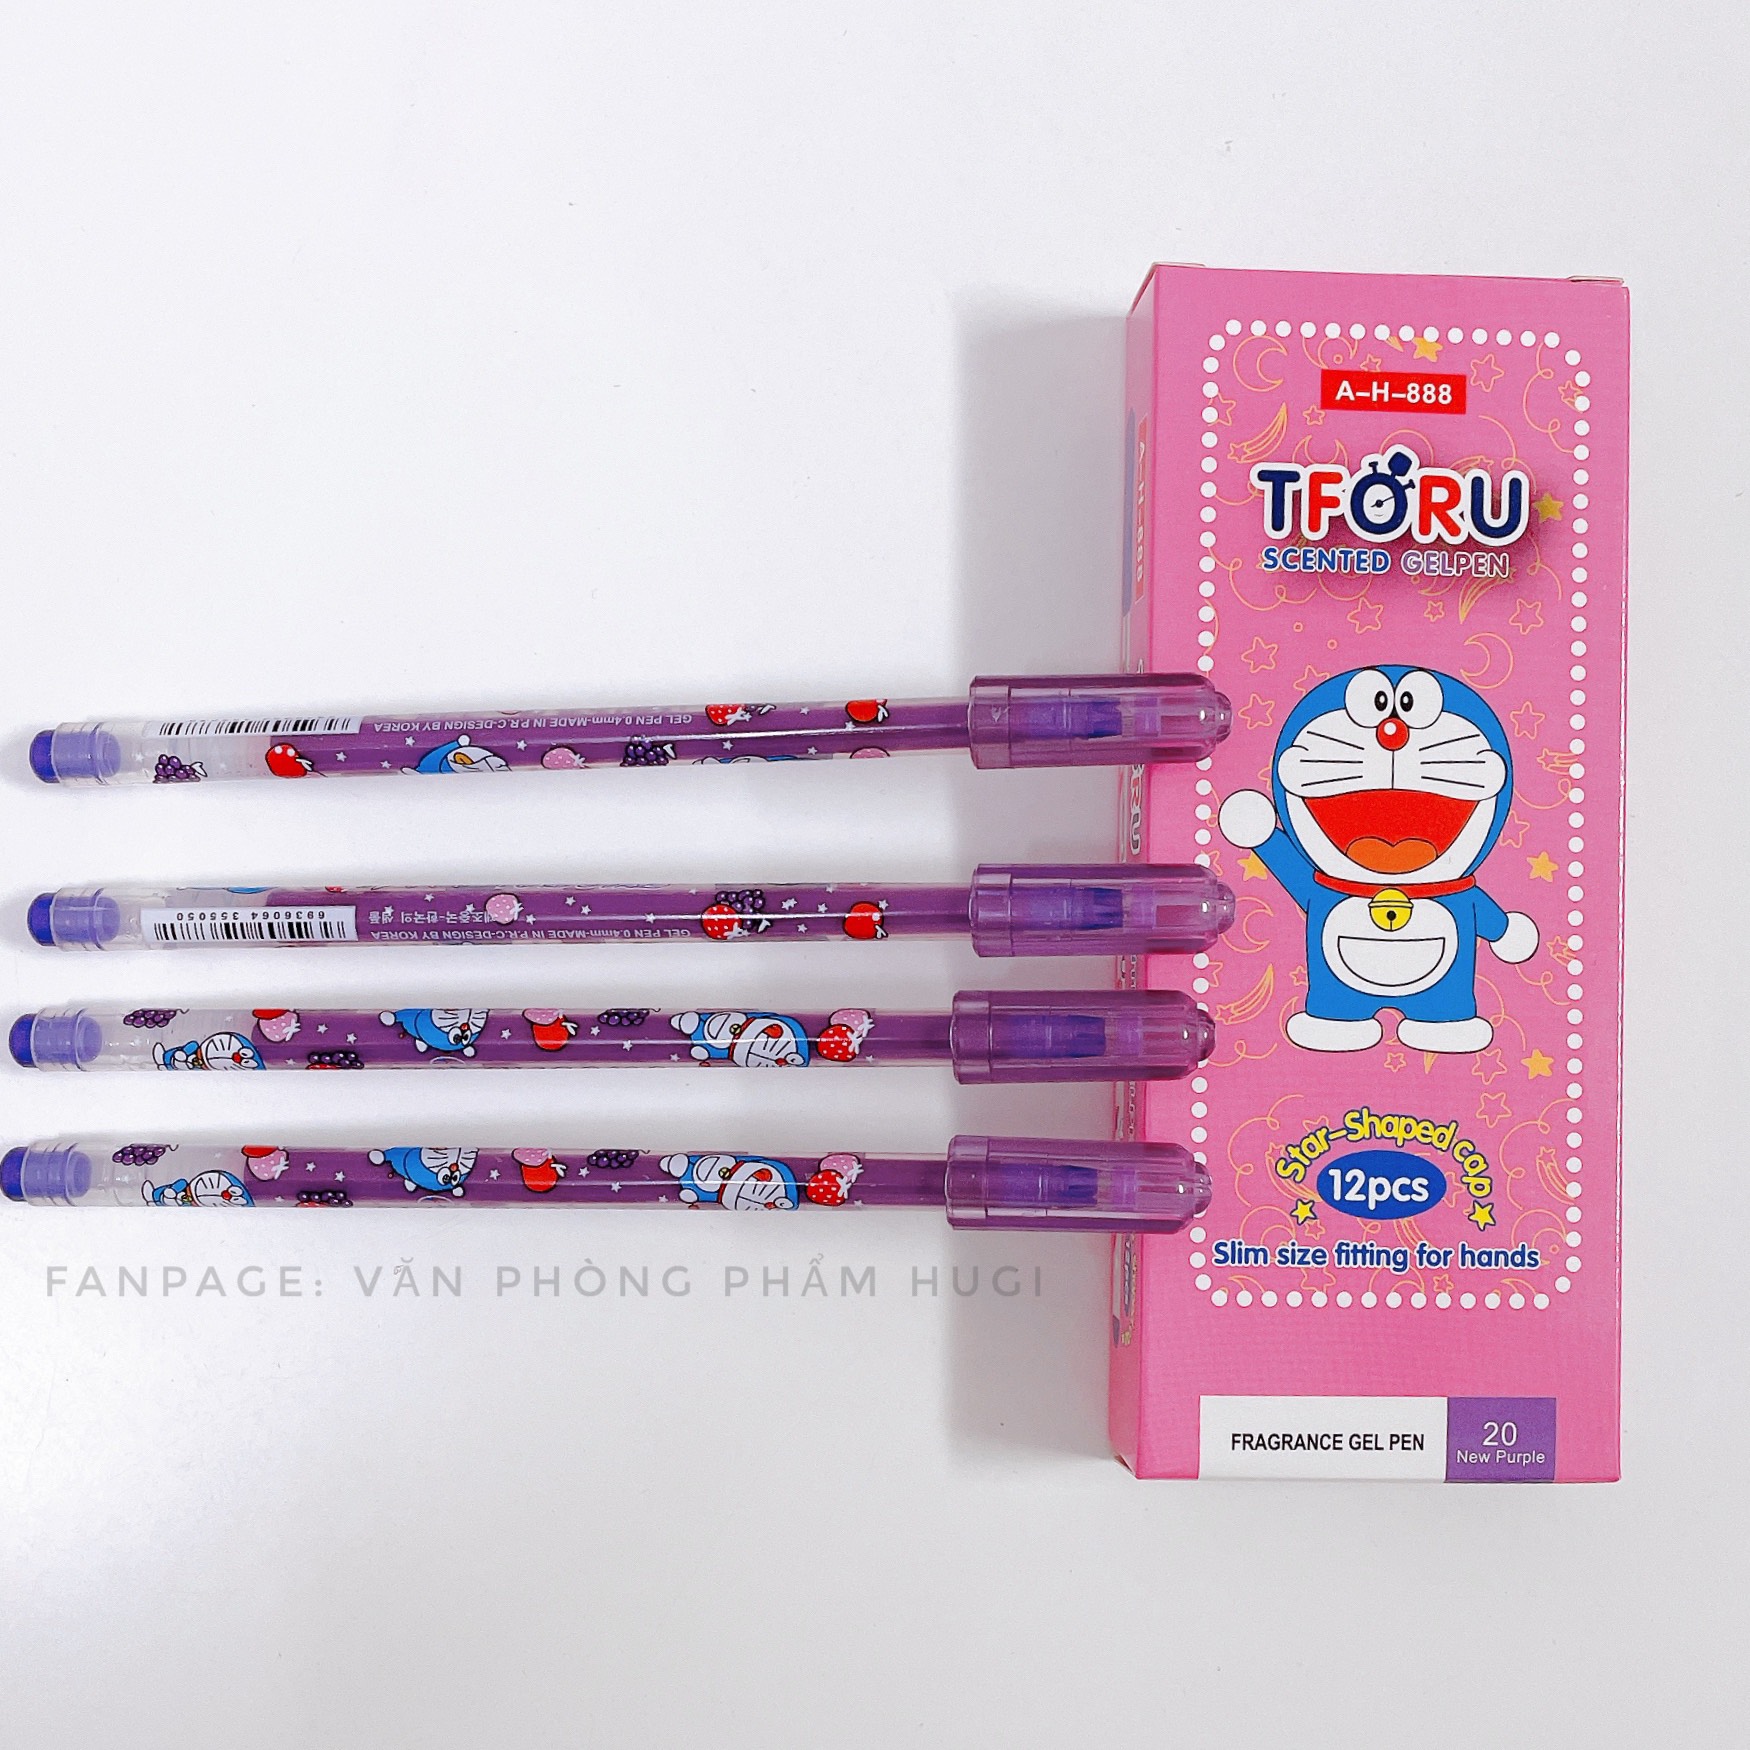 Hộp 12 cây bút gel nho Thoru nét nhỏ, mực đậm dành cho các em học sinh tiểu học